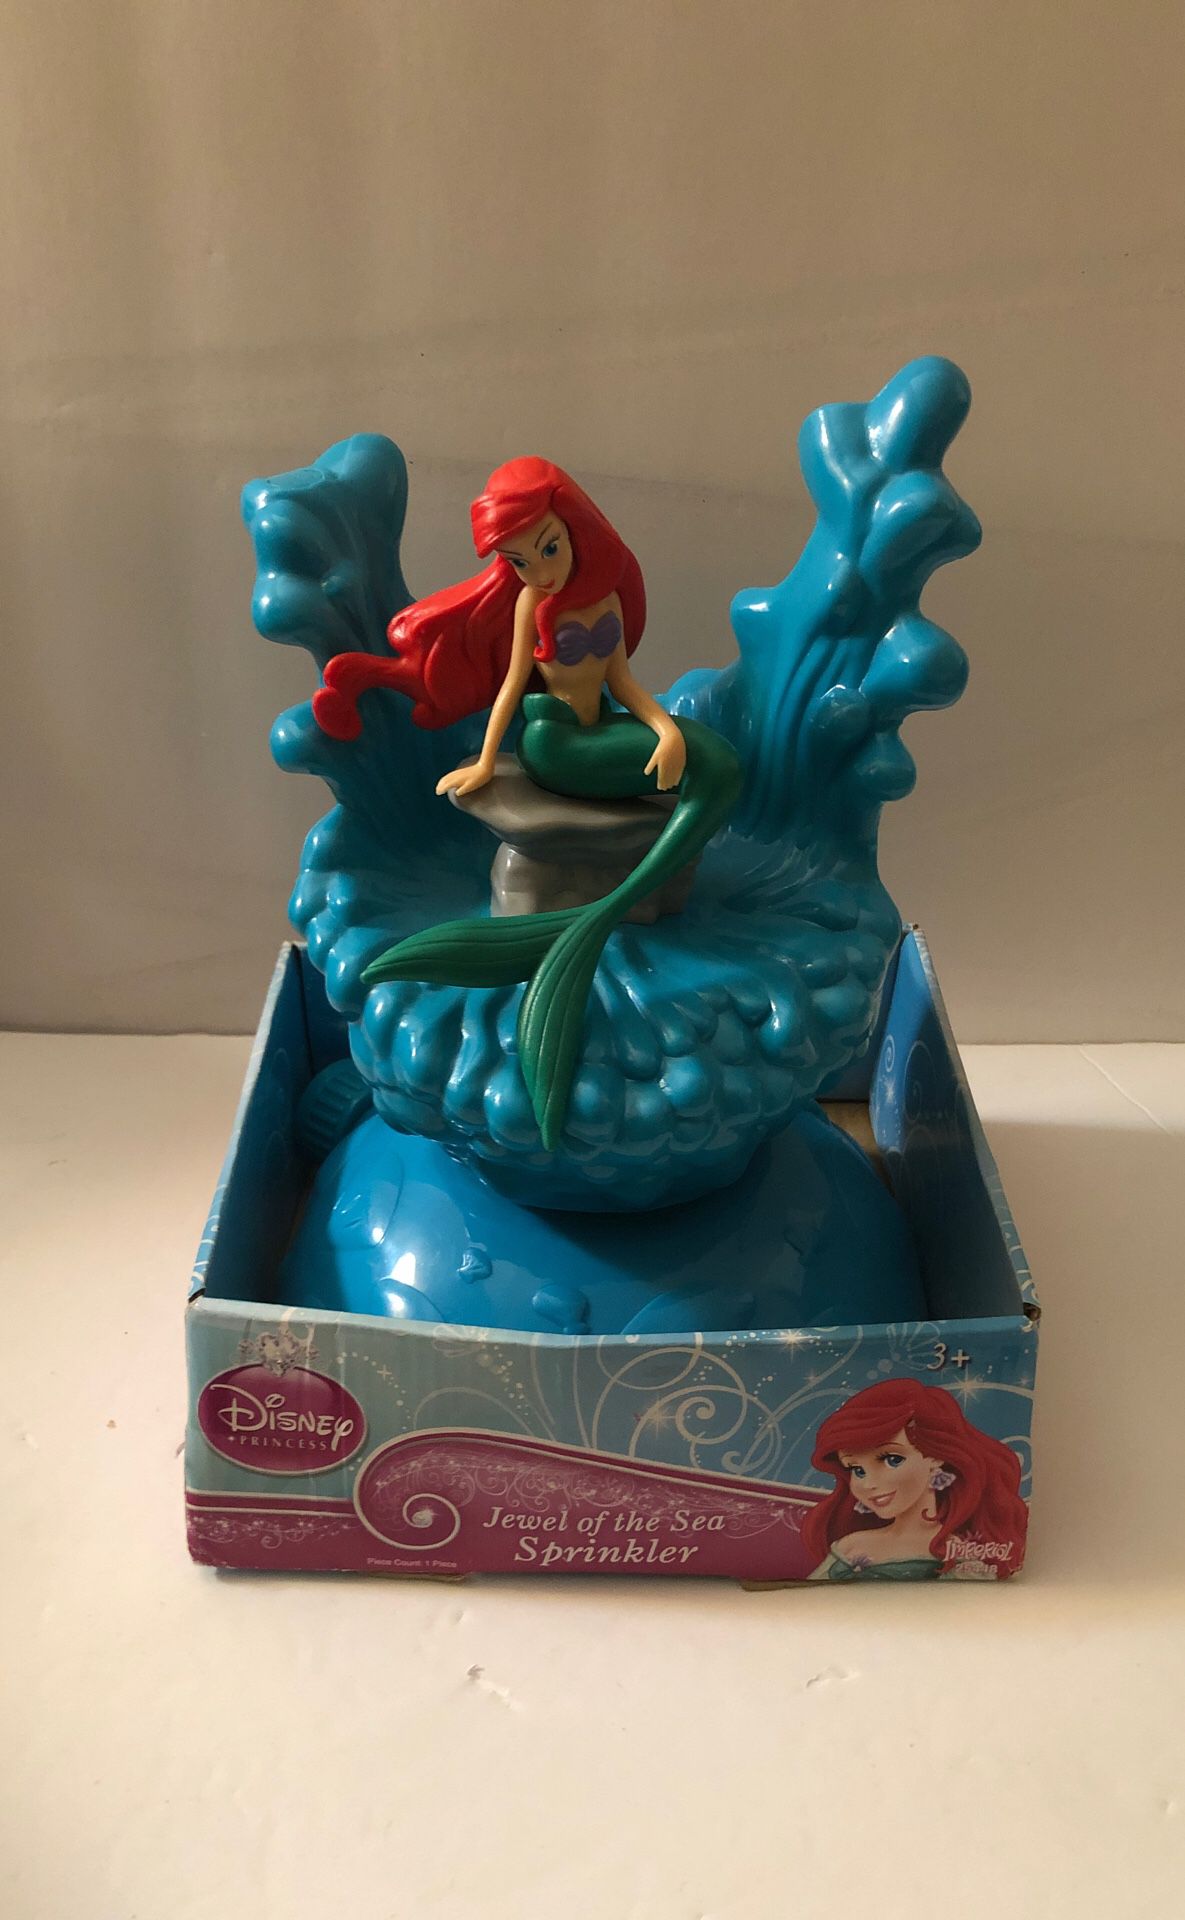 Disney Little Mermaid Sprinkler! “Jewel Of The Sea” - New